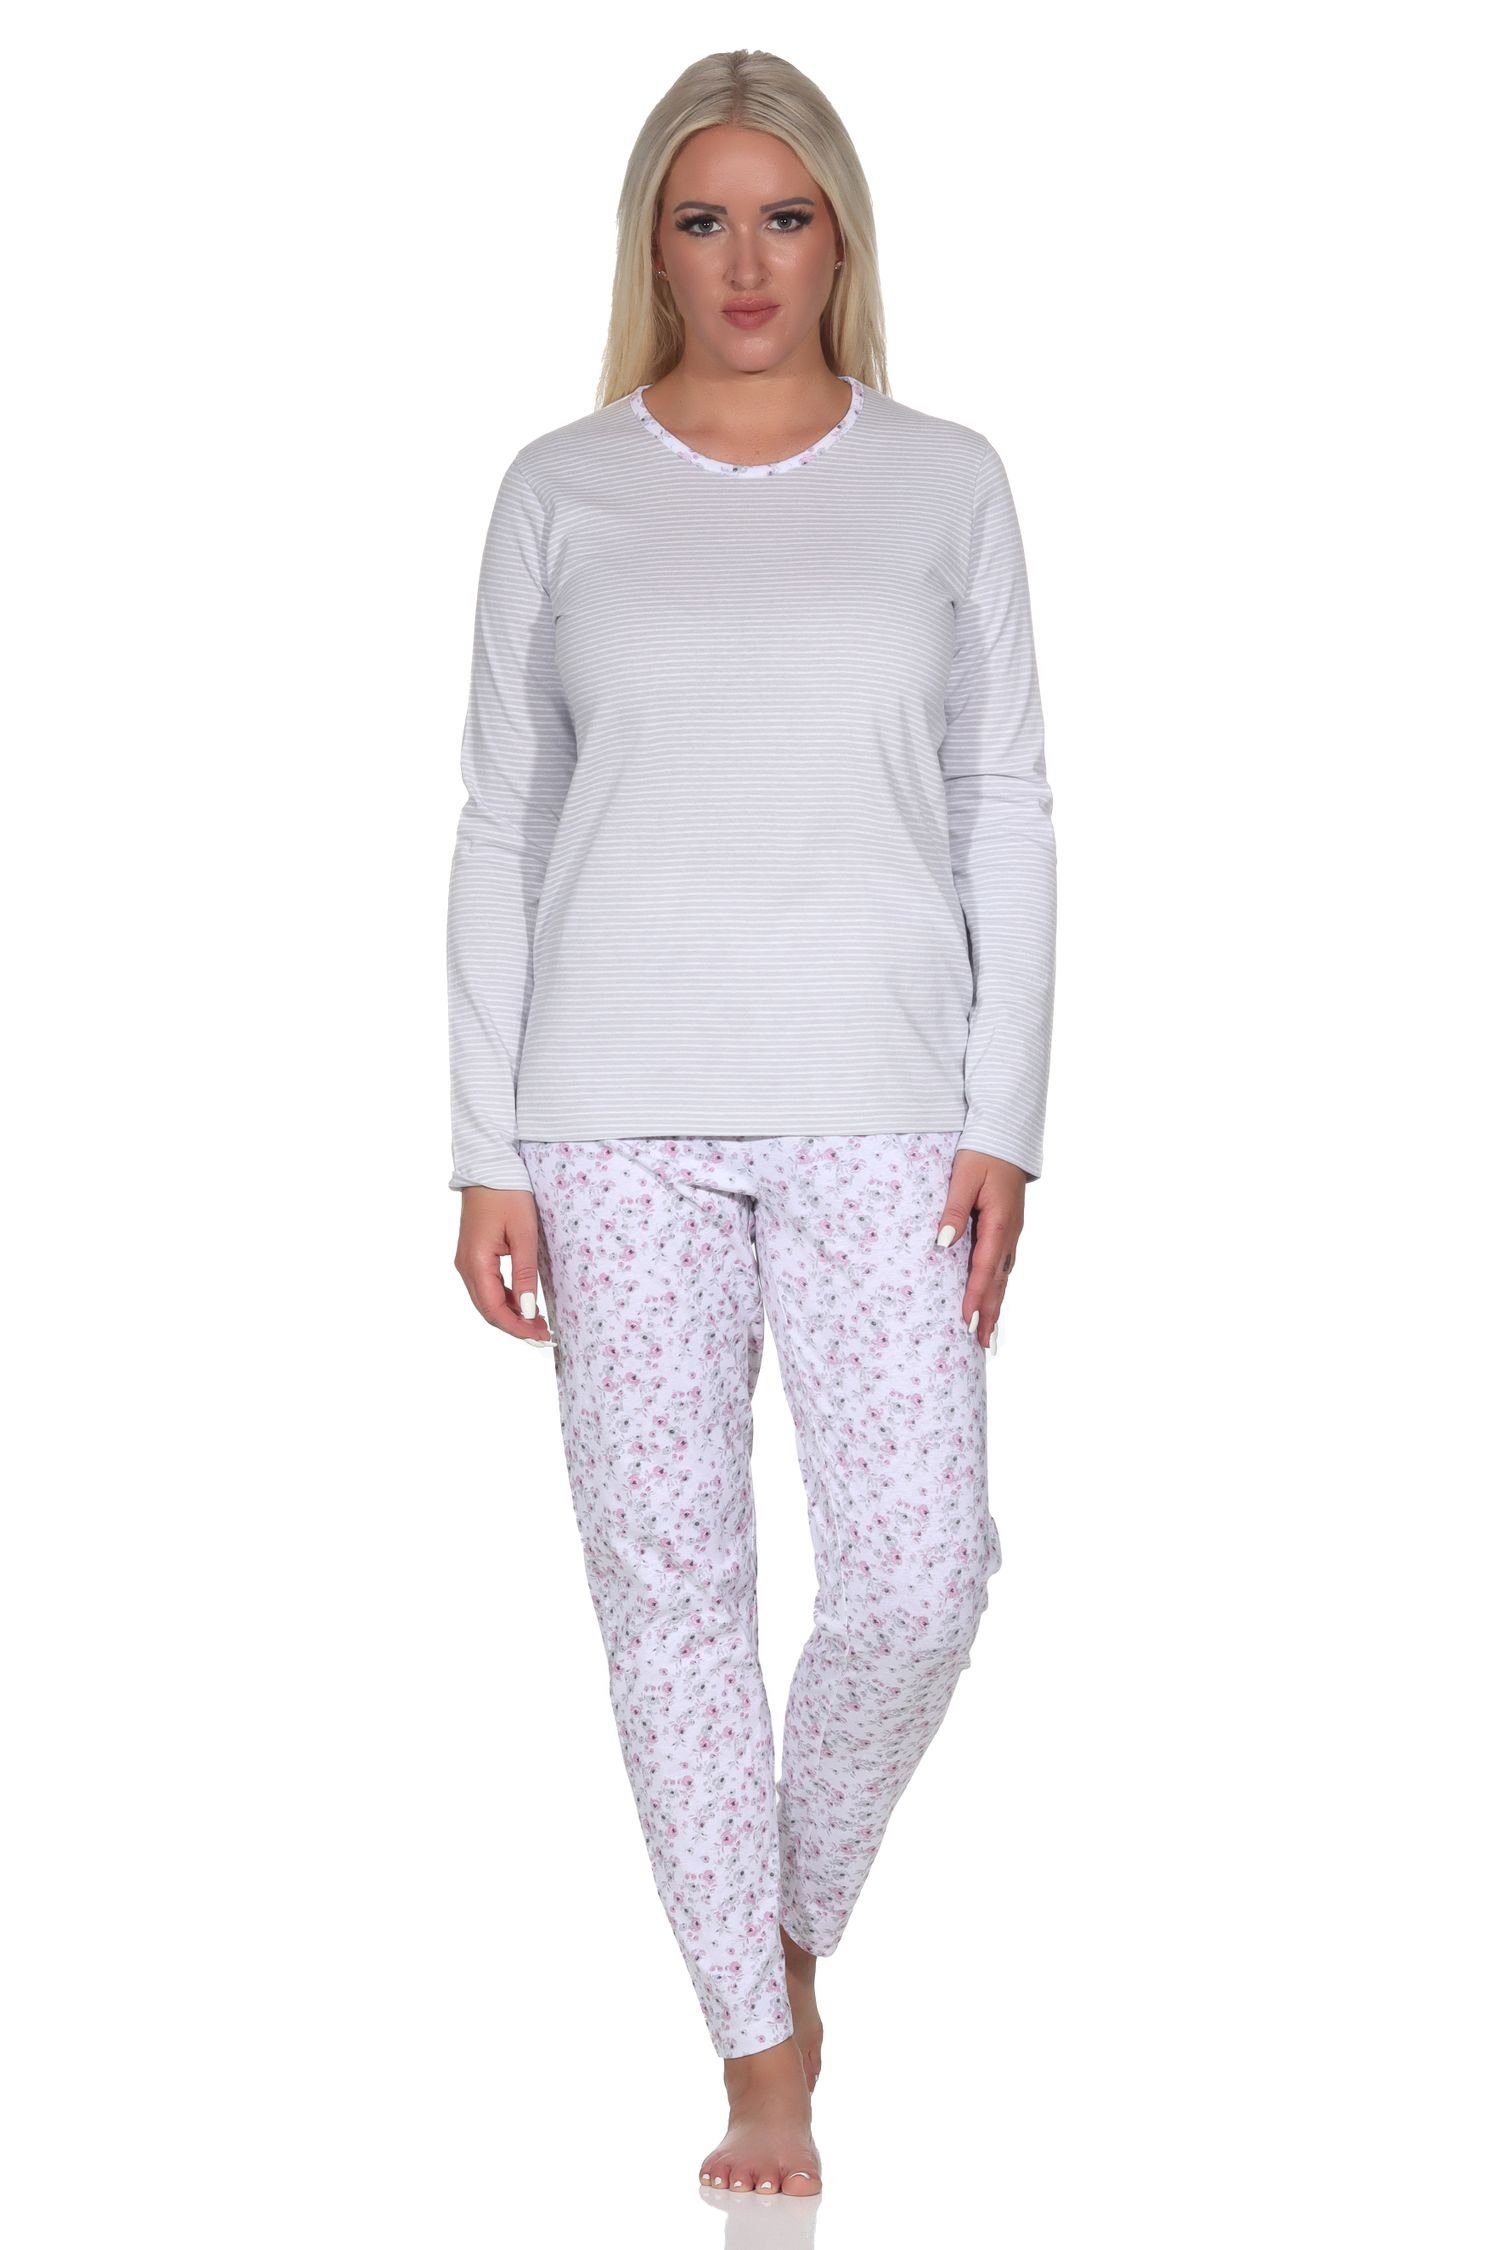 Normann Pyjama Verspielter Damen langarm Schlafanzug in tollem floralen Muster grau